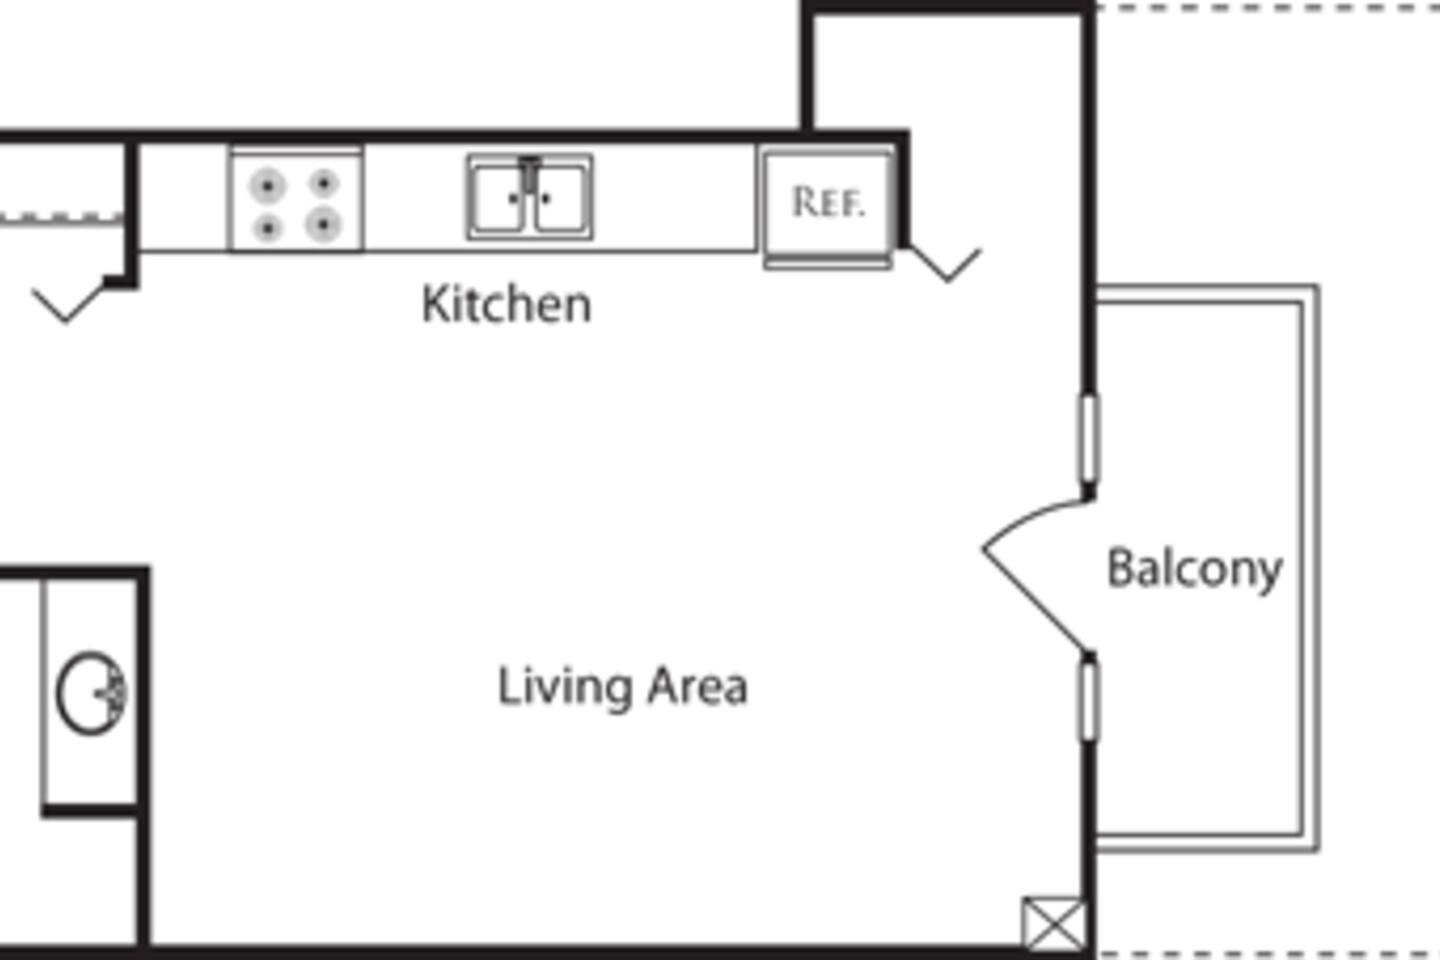 Floorplan diagram for Studio OO, showing Studio